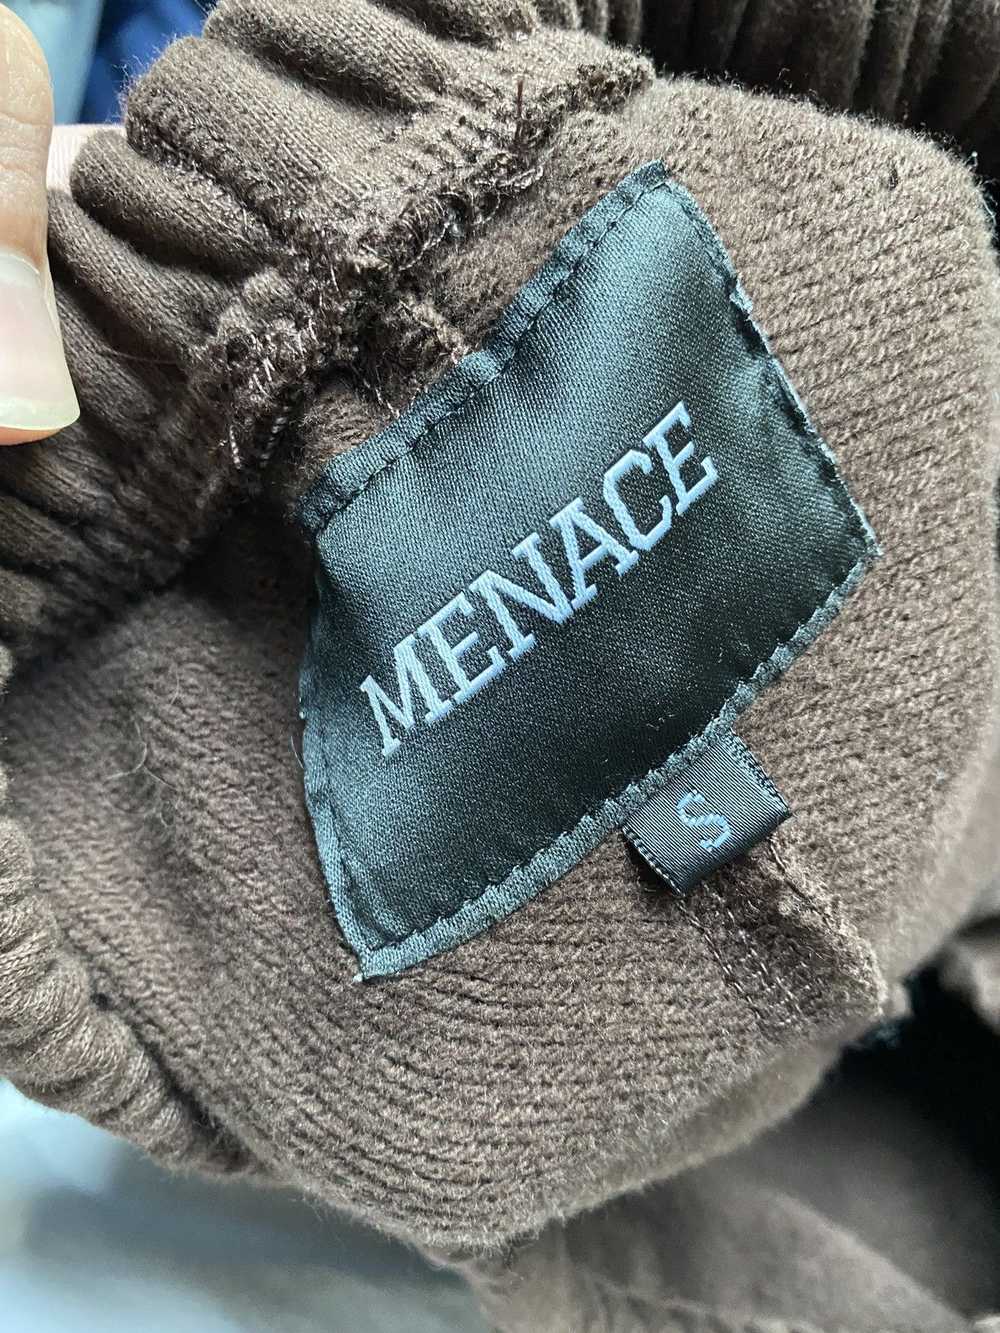 Menace Menace Los Angeles sweatpants brown size s… - image 6